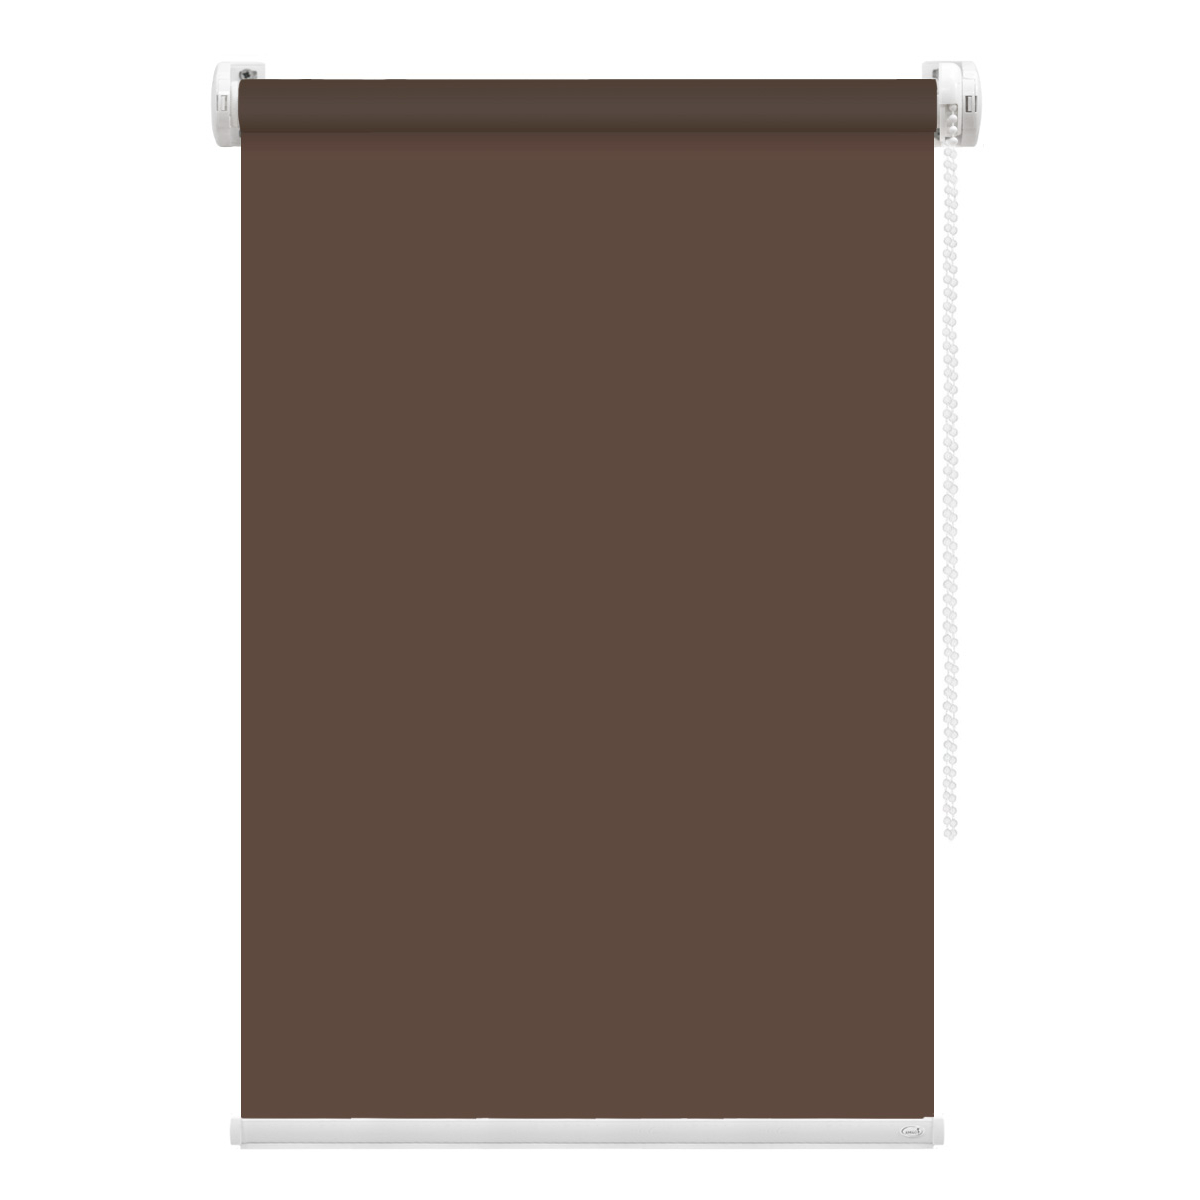 Рулонная штора FixLine Amigo Basic коричневая 55х160 см рулонная штора fixline amigo basic коричневая 50х160 см